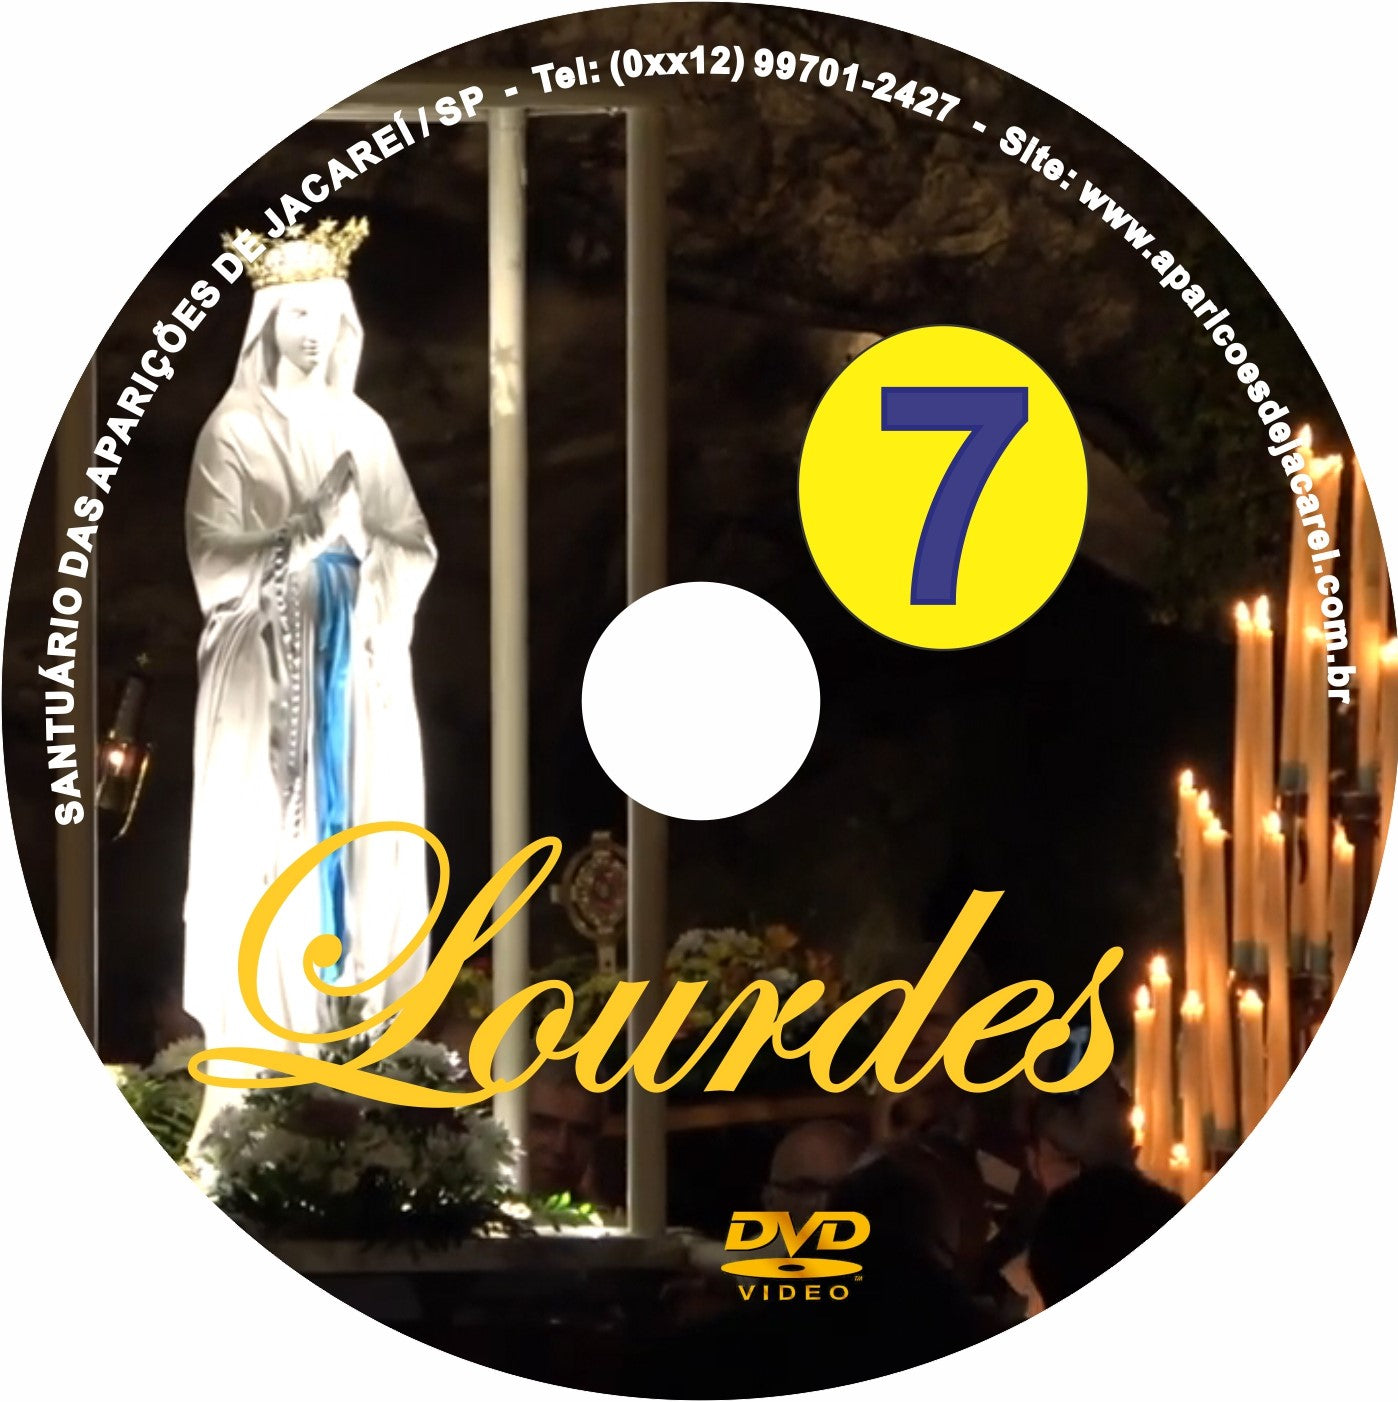 DVD Lourdes 7